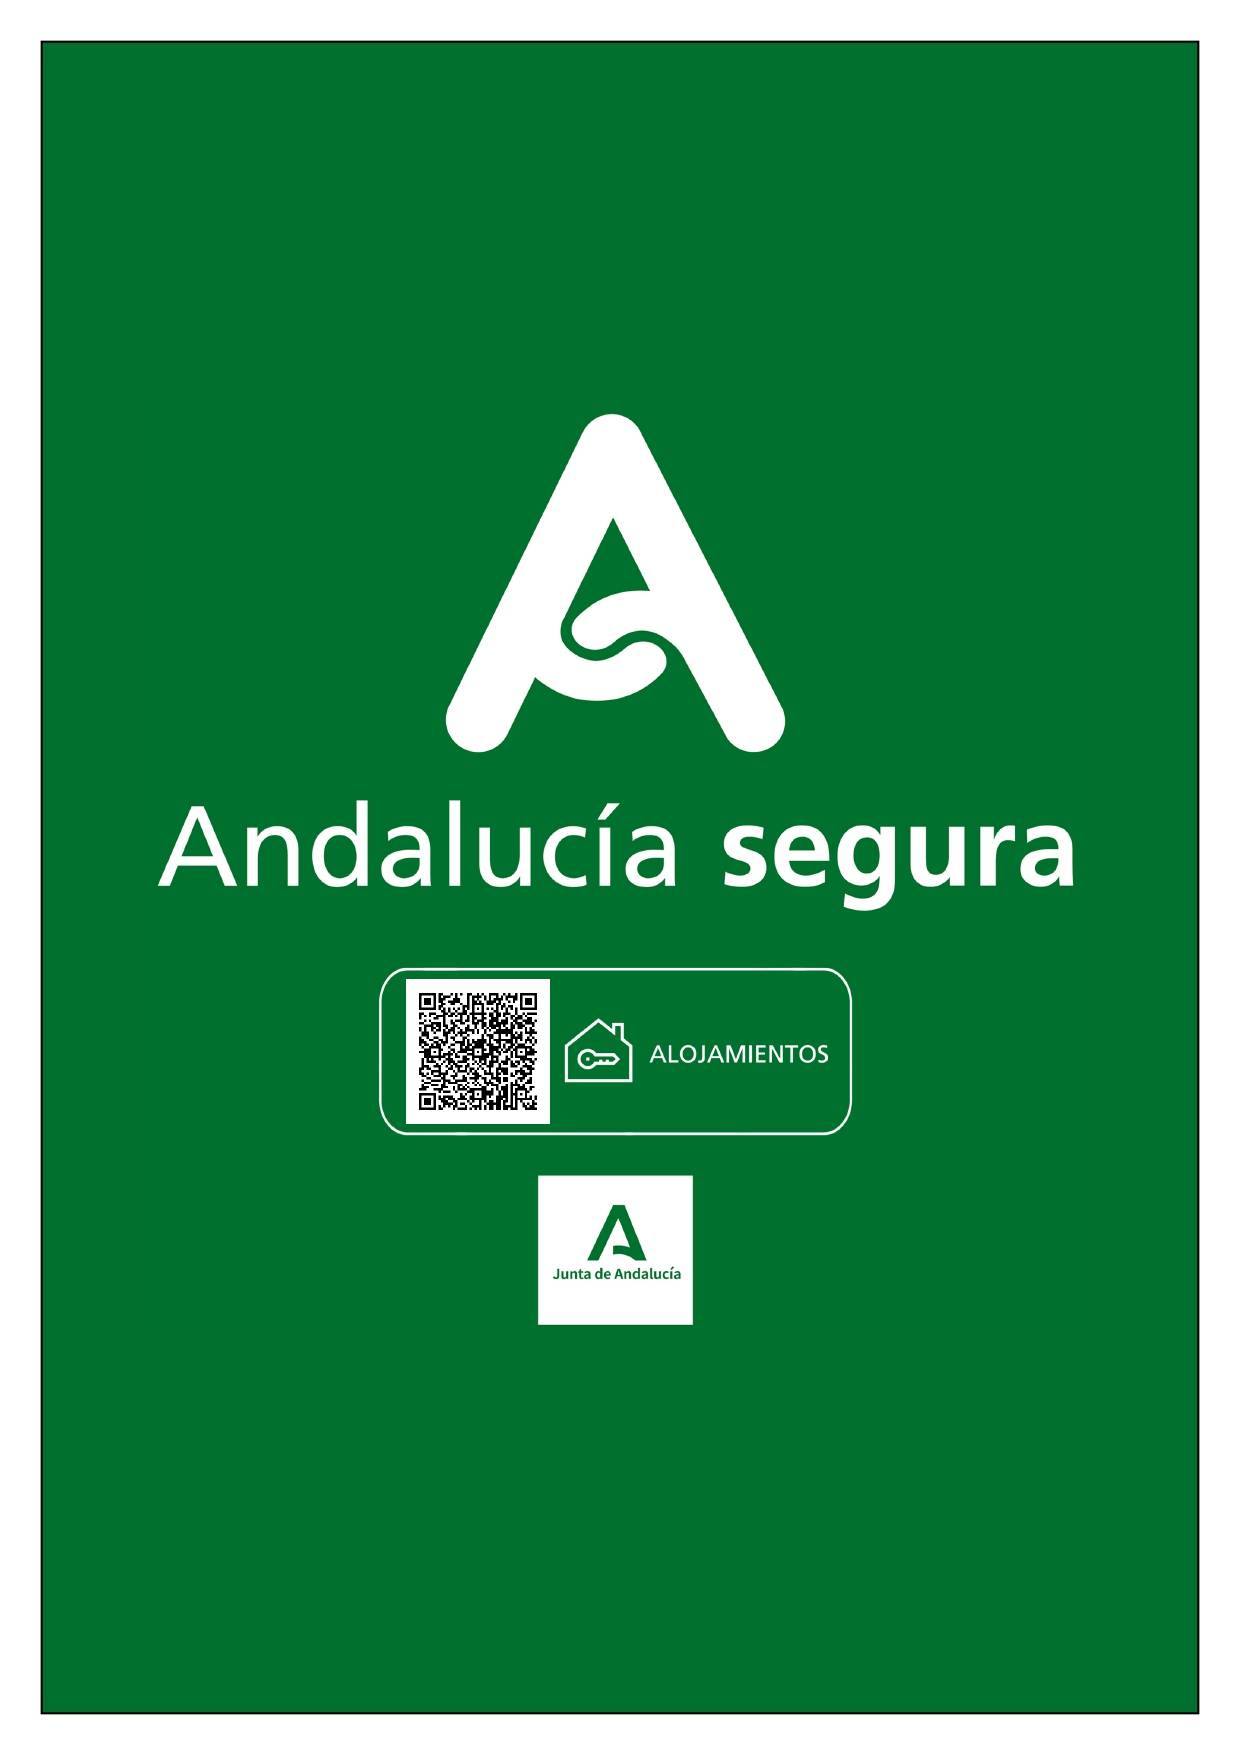 Andalucía Segura